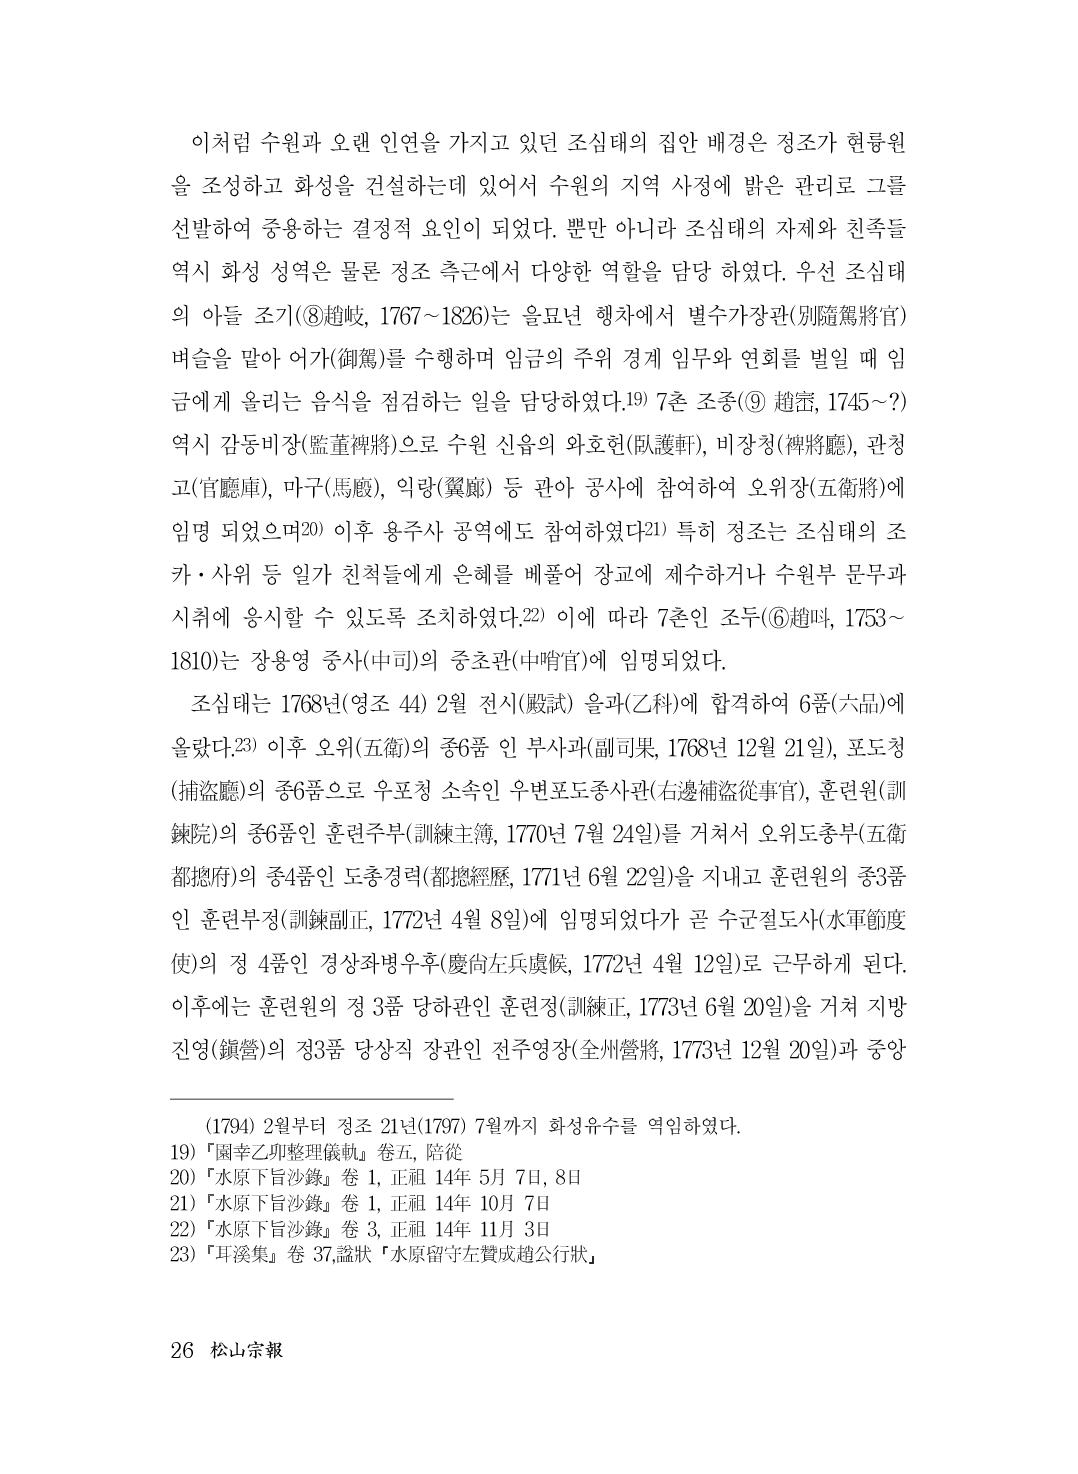 (전체) 송산종보(27호)(최종)_27.jpg